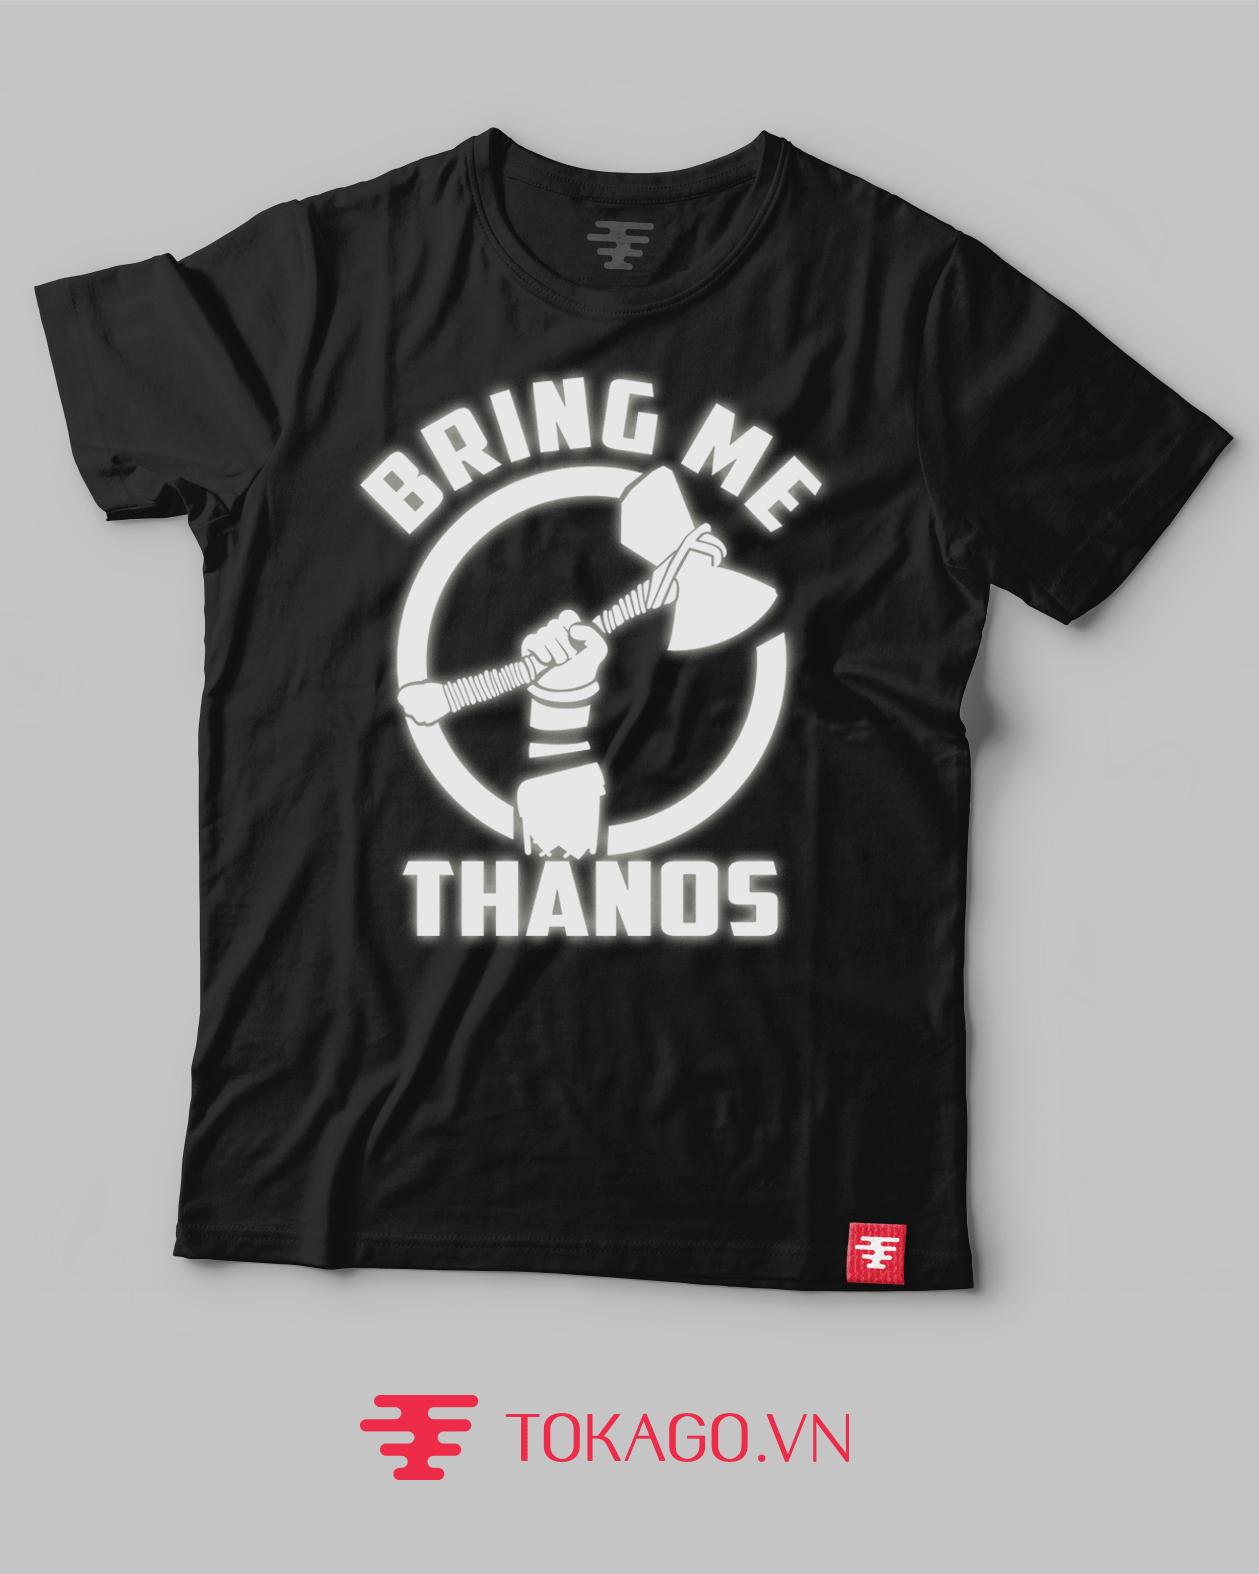 Stormbreaker Bring Me Thanos T-shirt